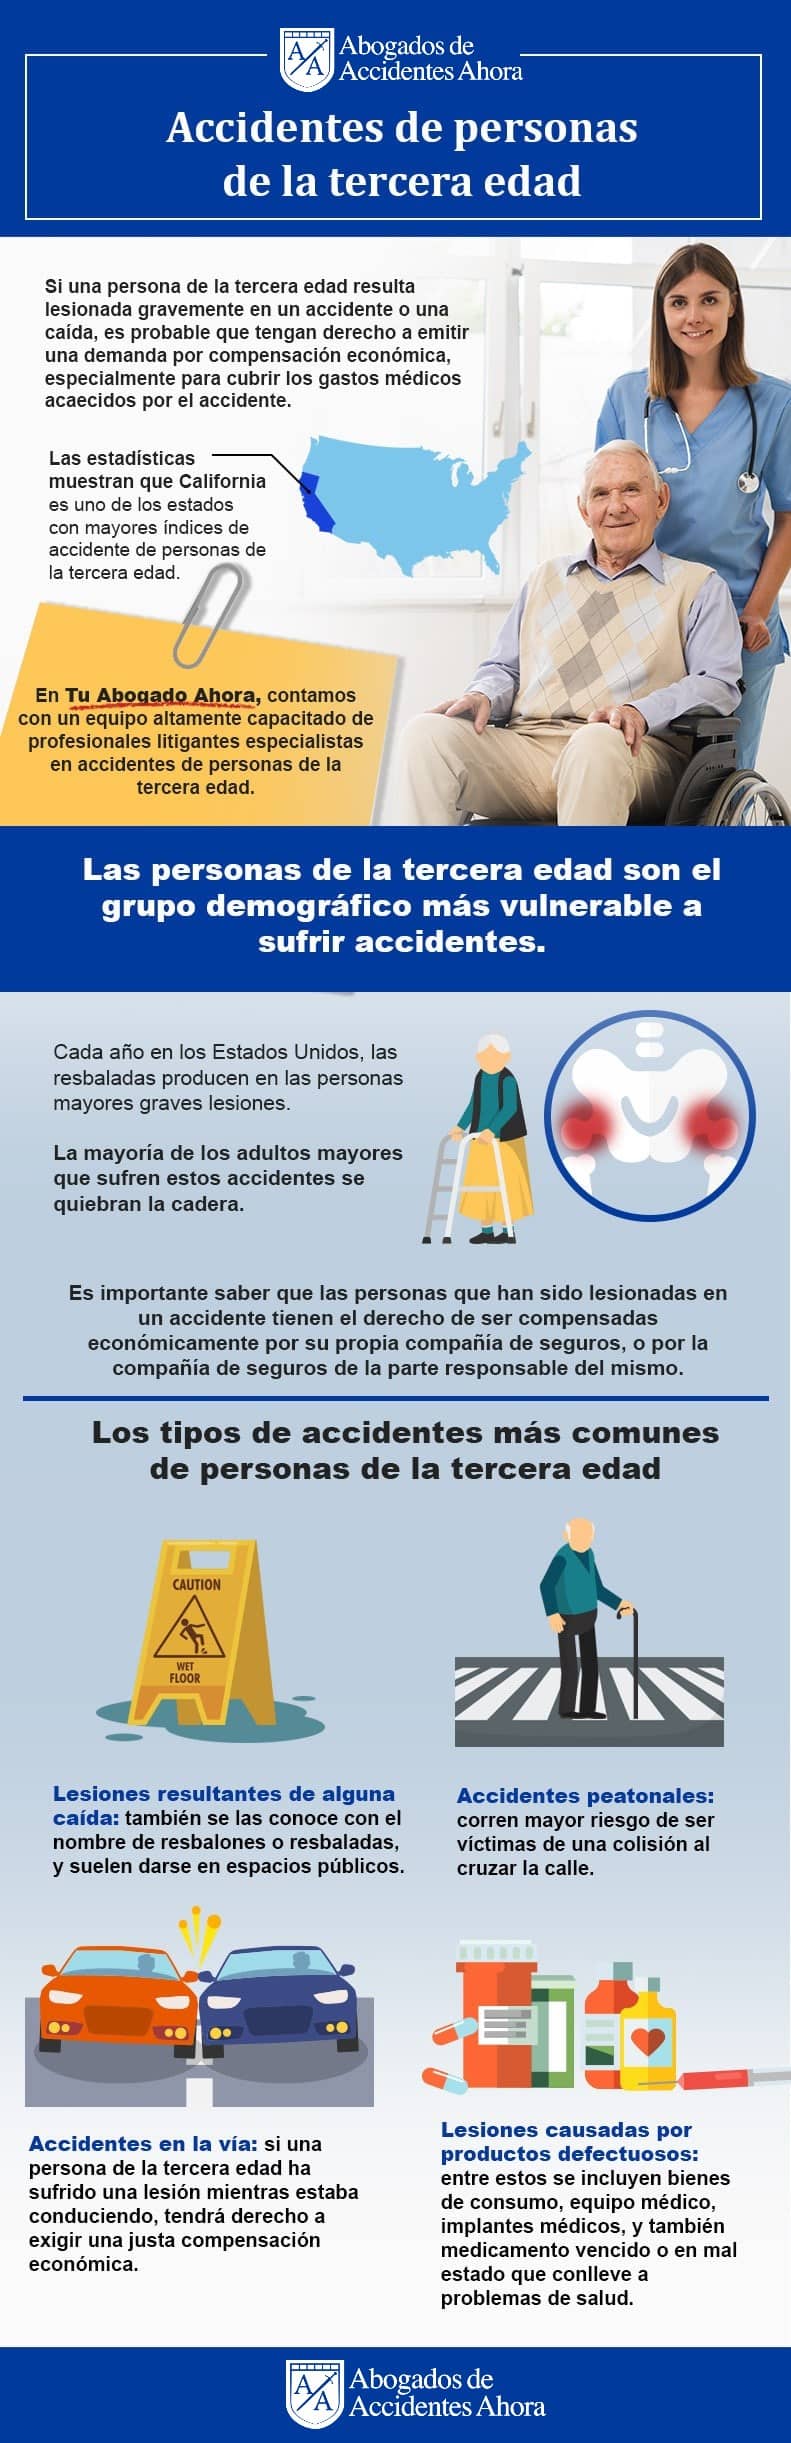 Los accidentes más comunes en la tercera edad, Abogados de Accidentes Ahora